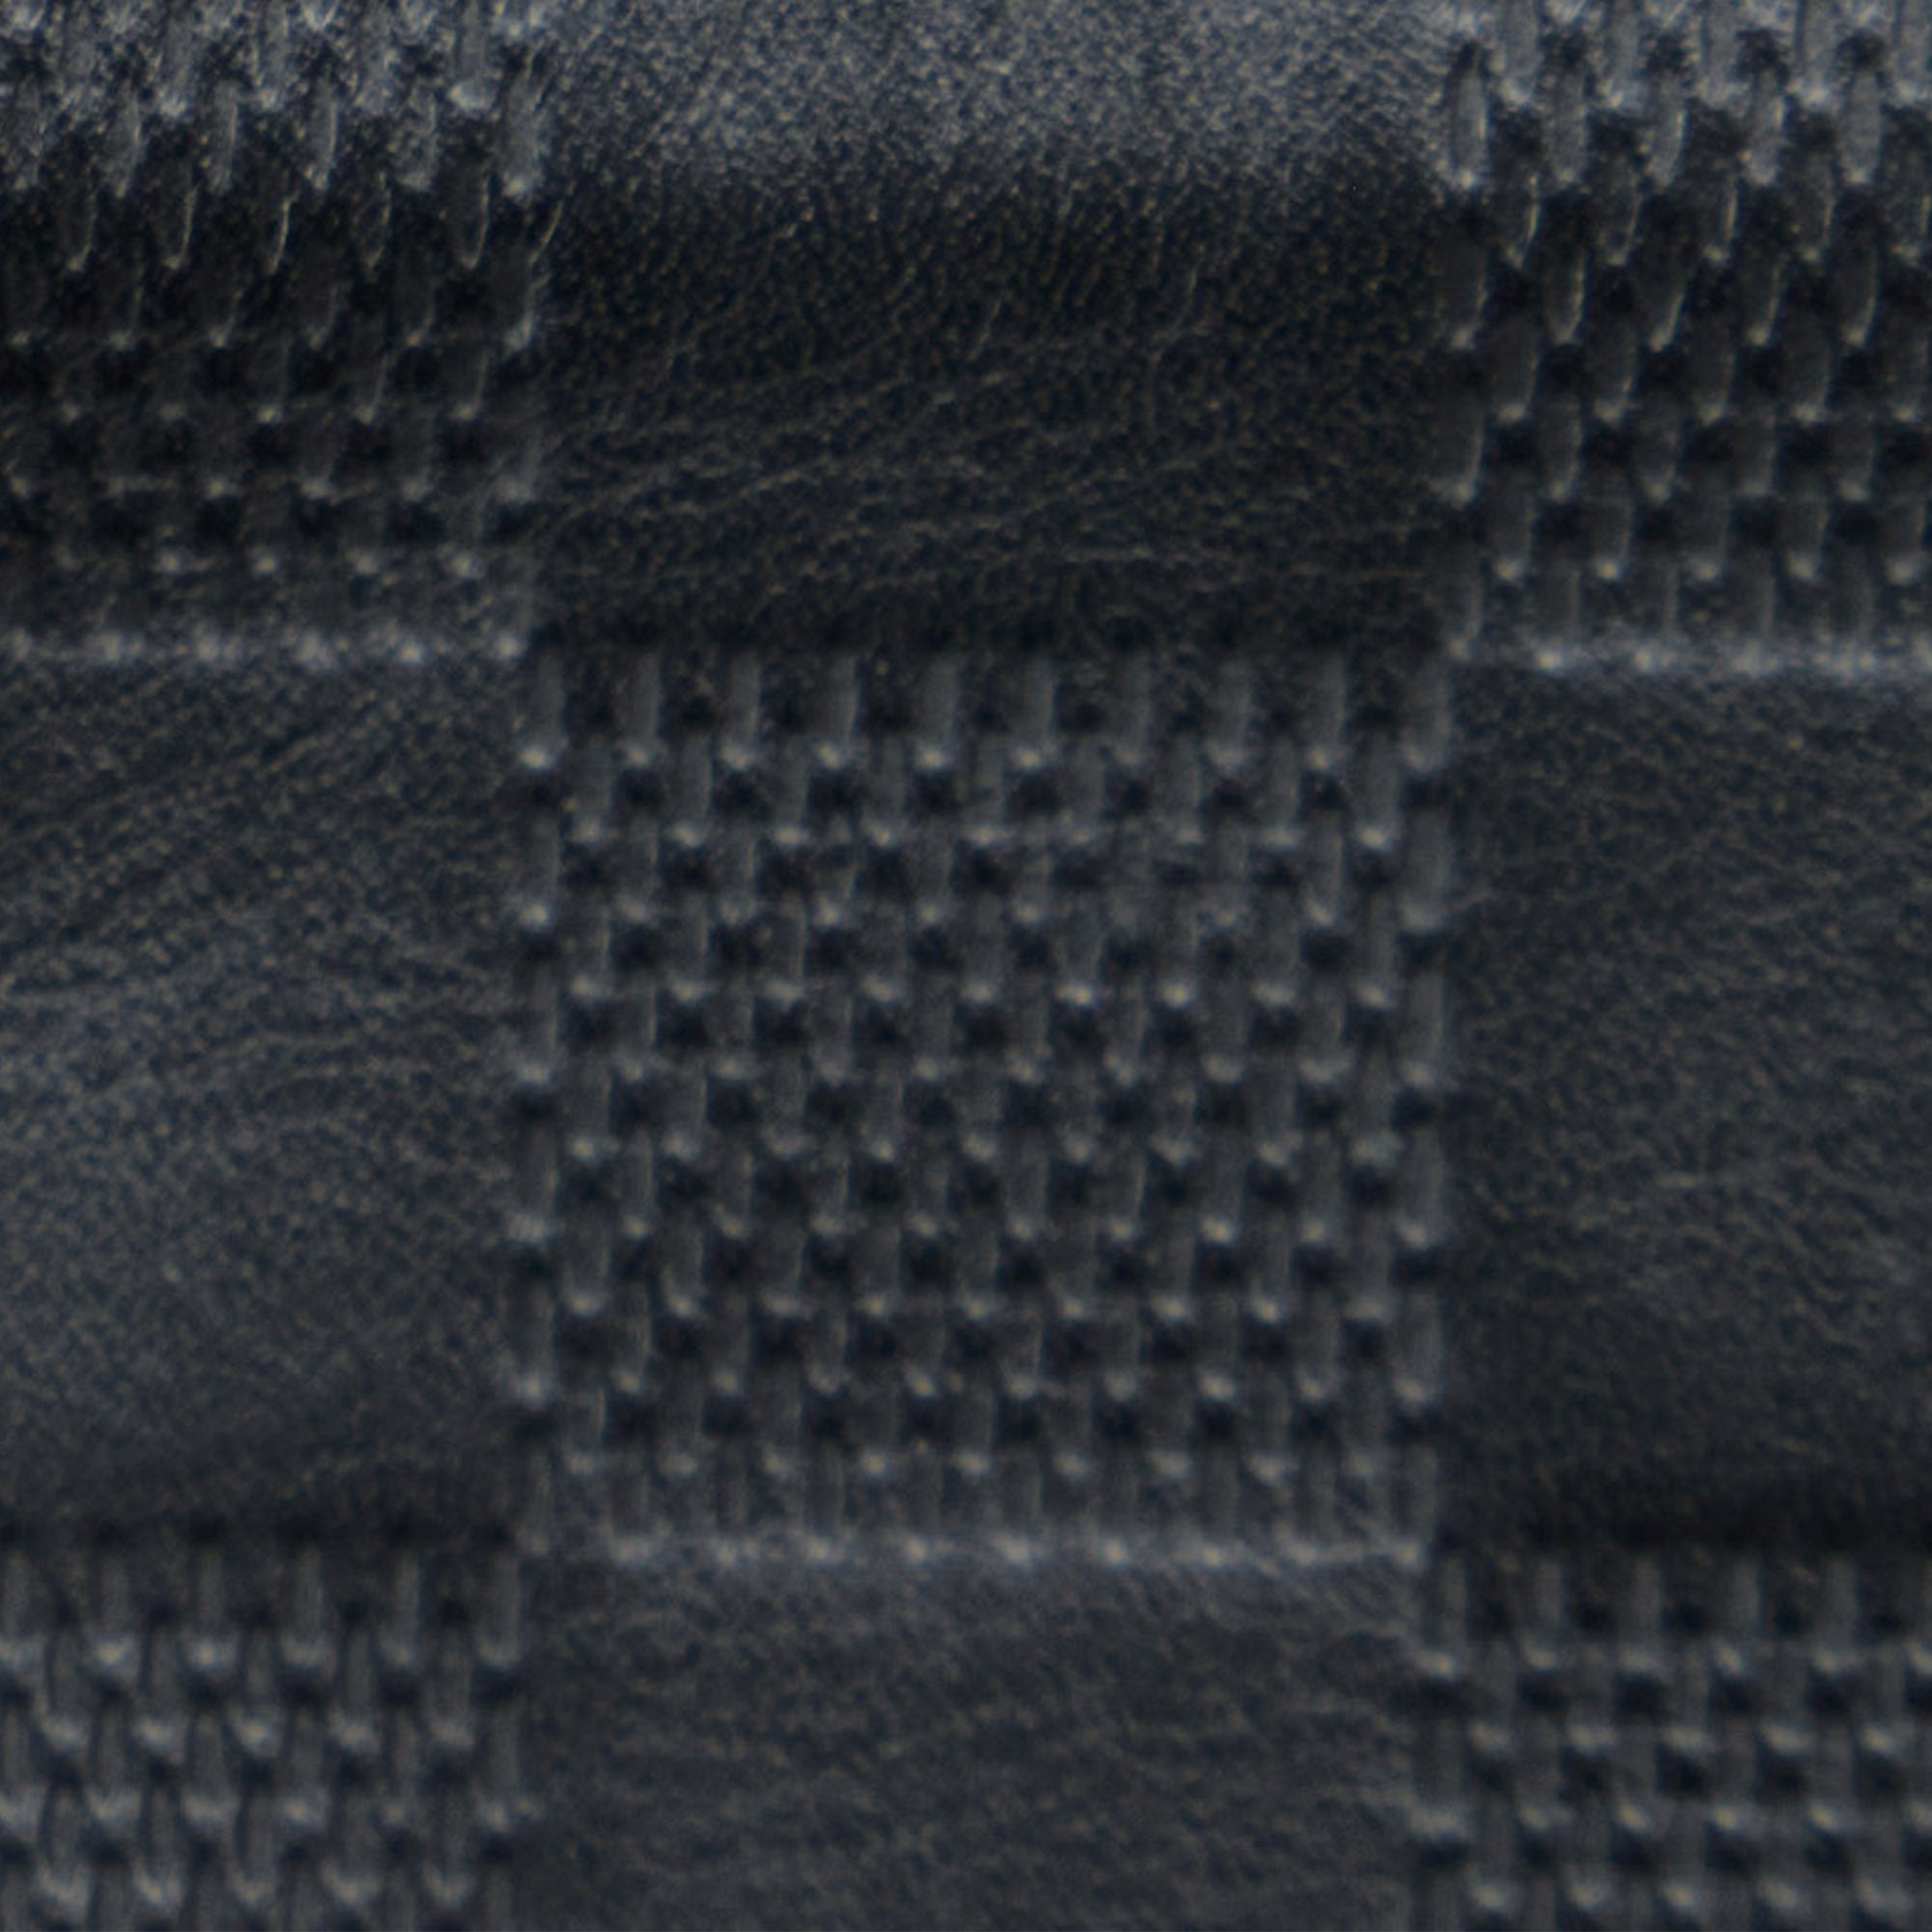 Louis Vuitton, Bags, Louis Vuitton Blue Damier Infini Leather Slender  Wallet